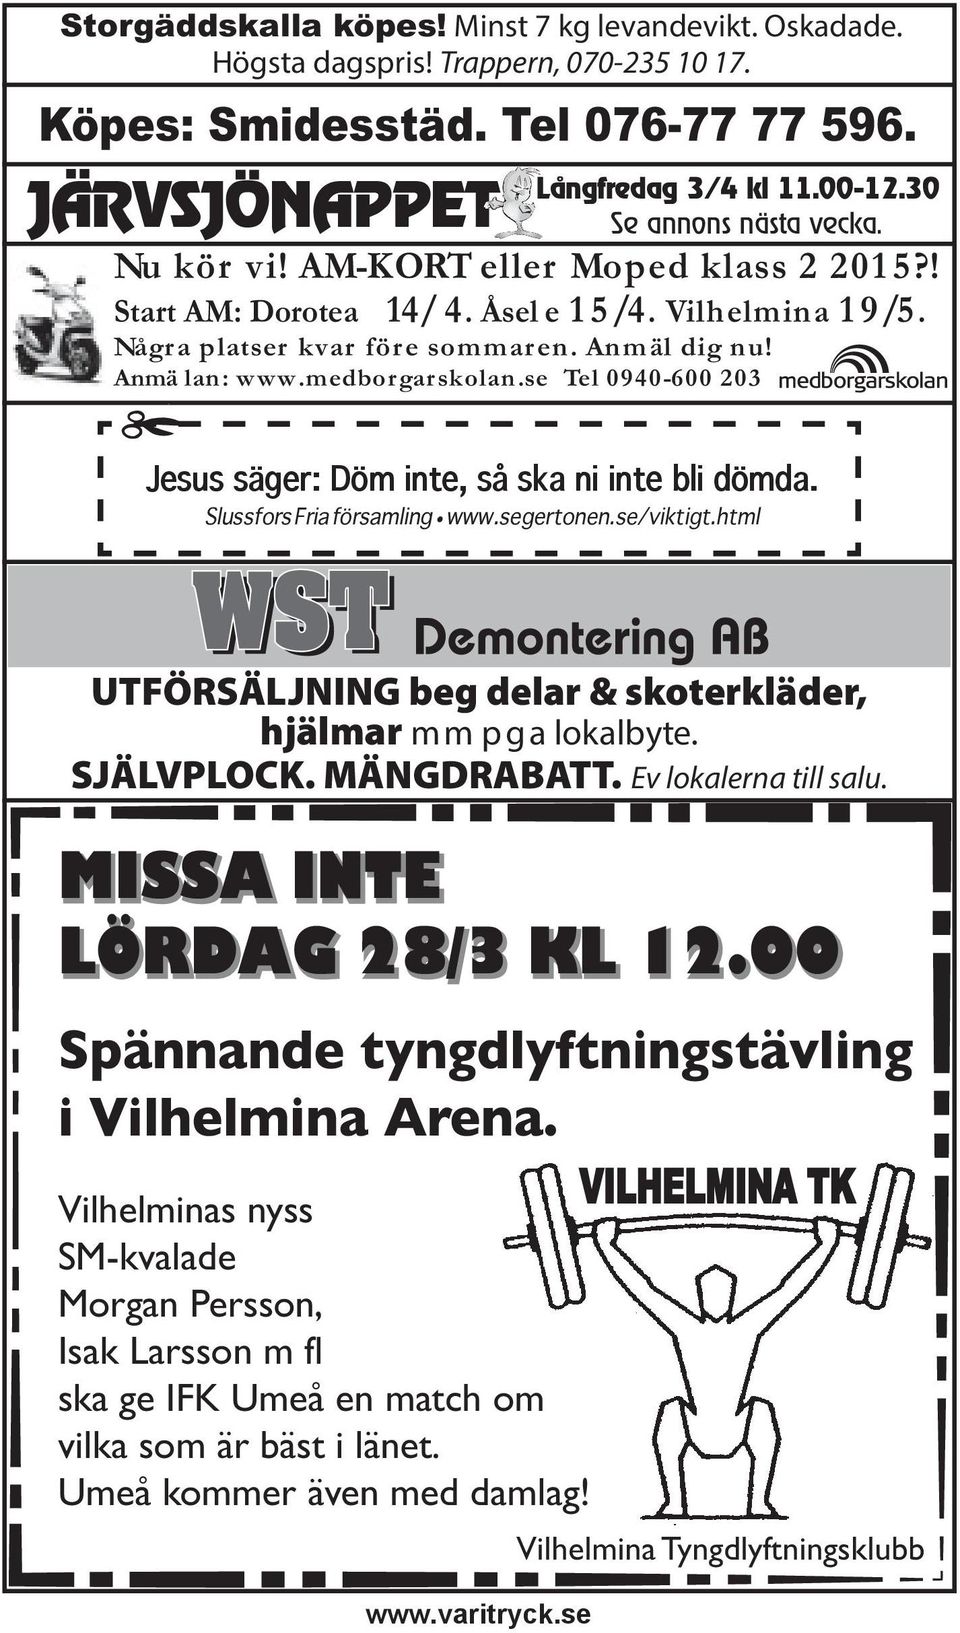 medborgarskolan.se Tel 0940-600 203 Jesus säger: Döm inte, så ska ni inte bli dömda. Slussfors Fria församling www.segertonen.se/viktigt.